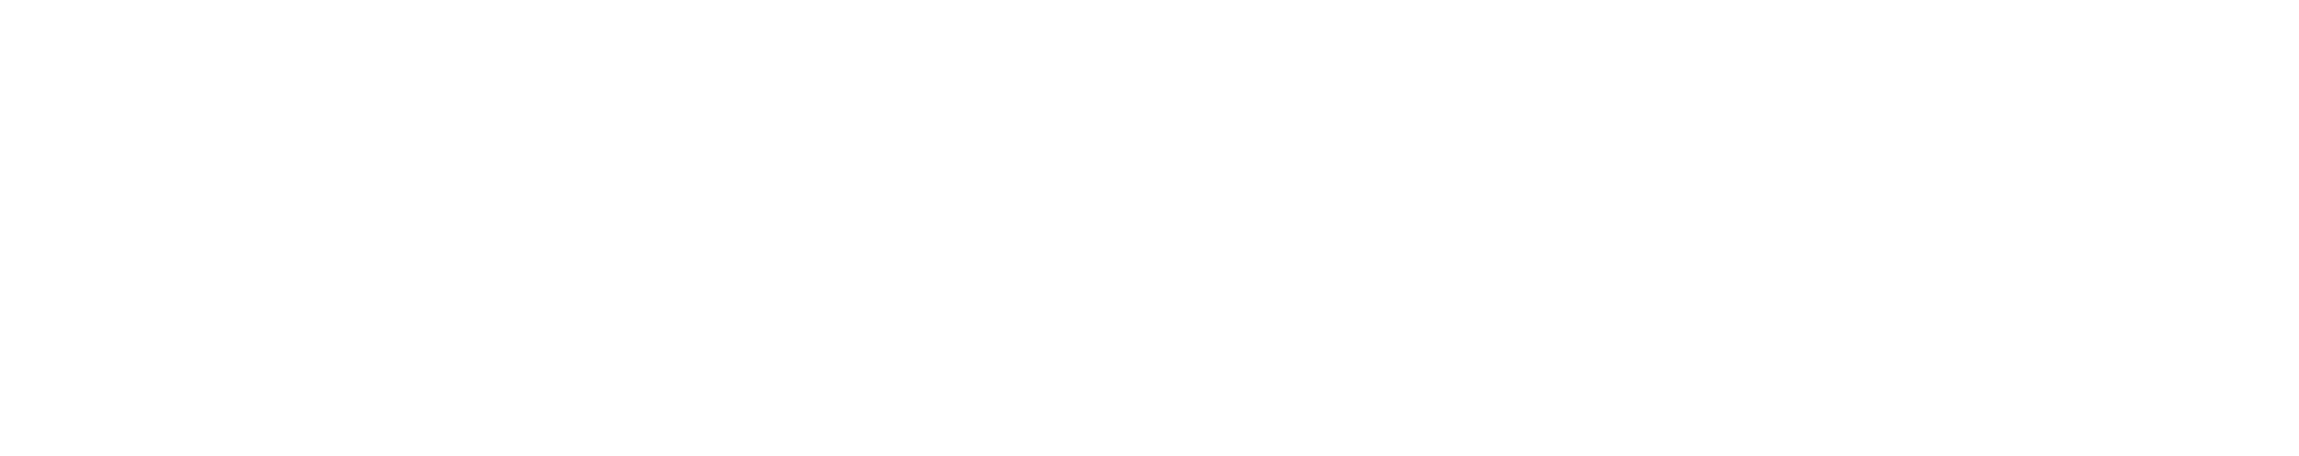 PlayPlay logo 2022 white-1